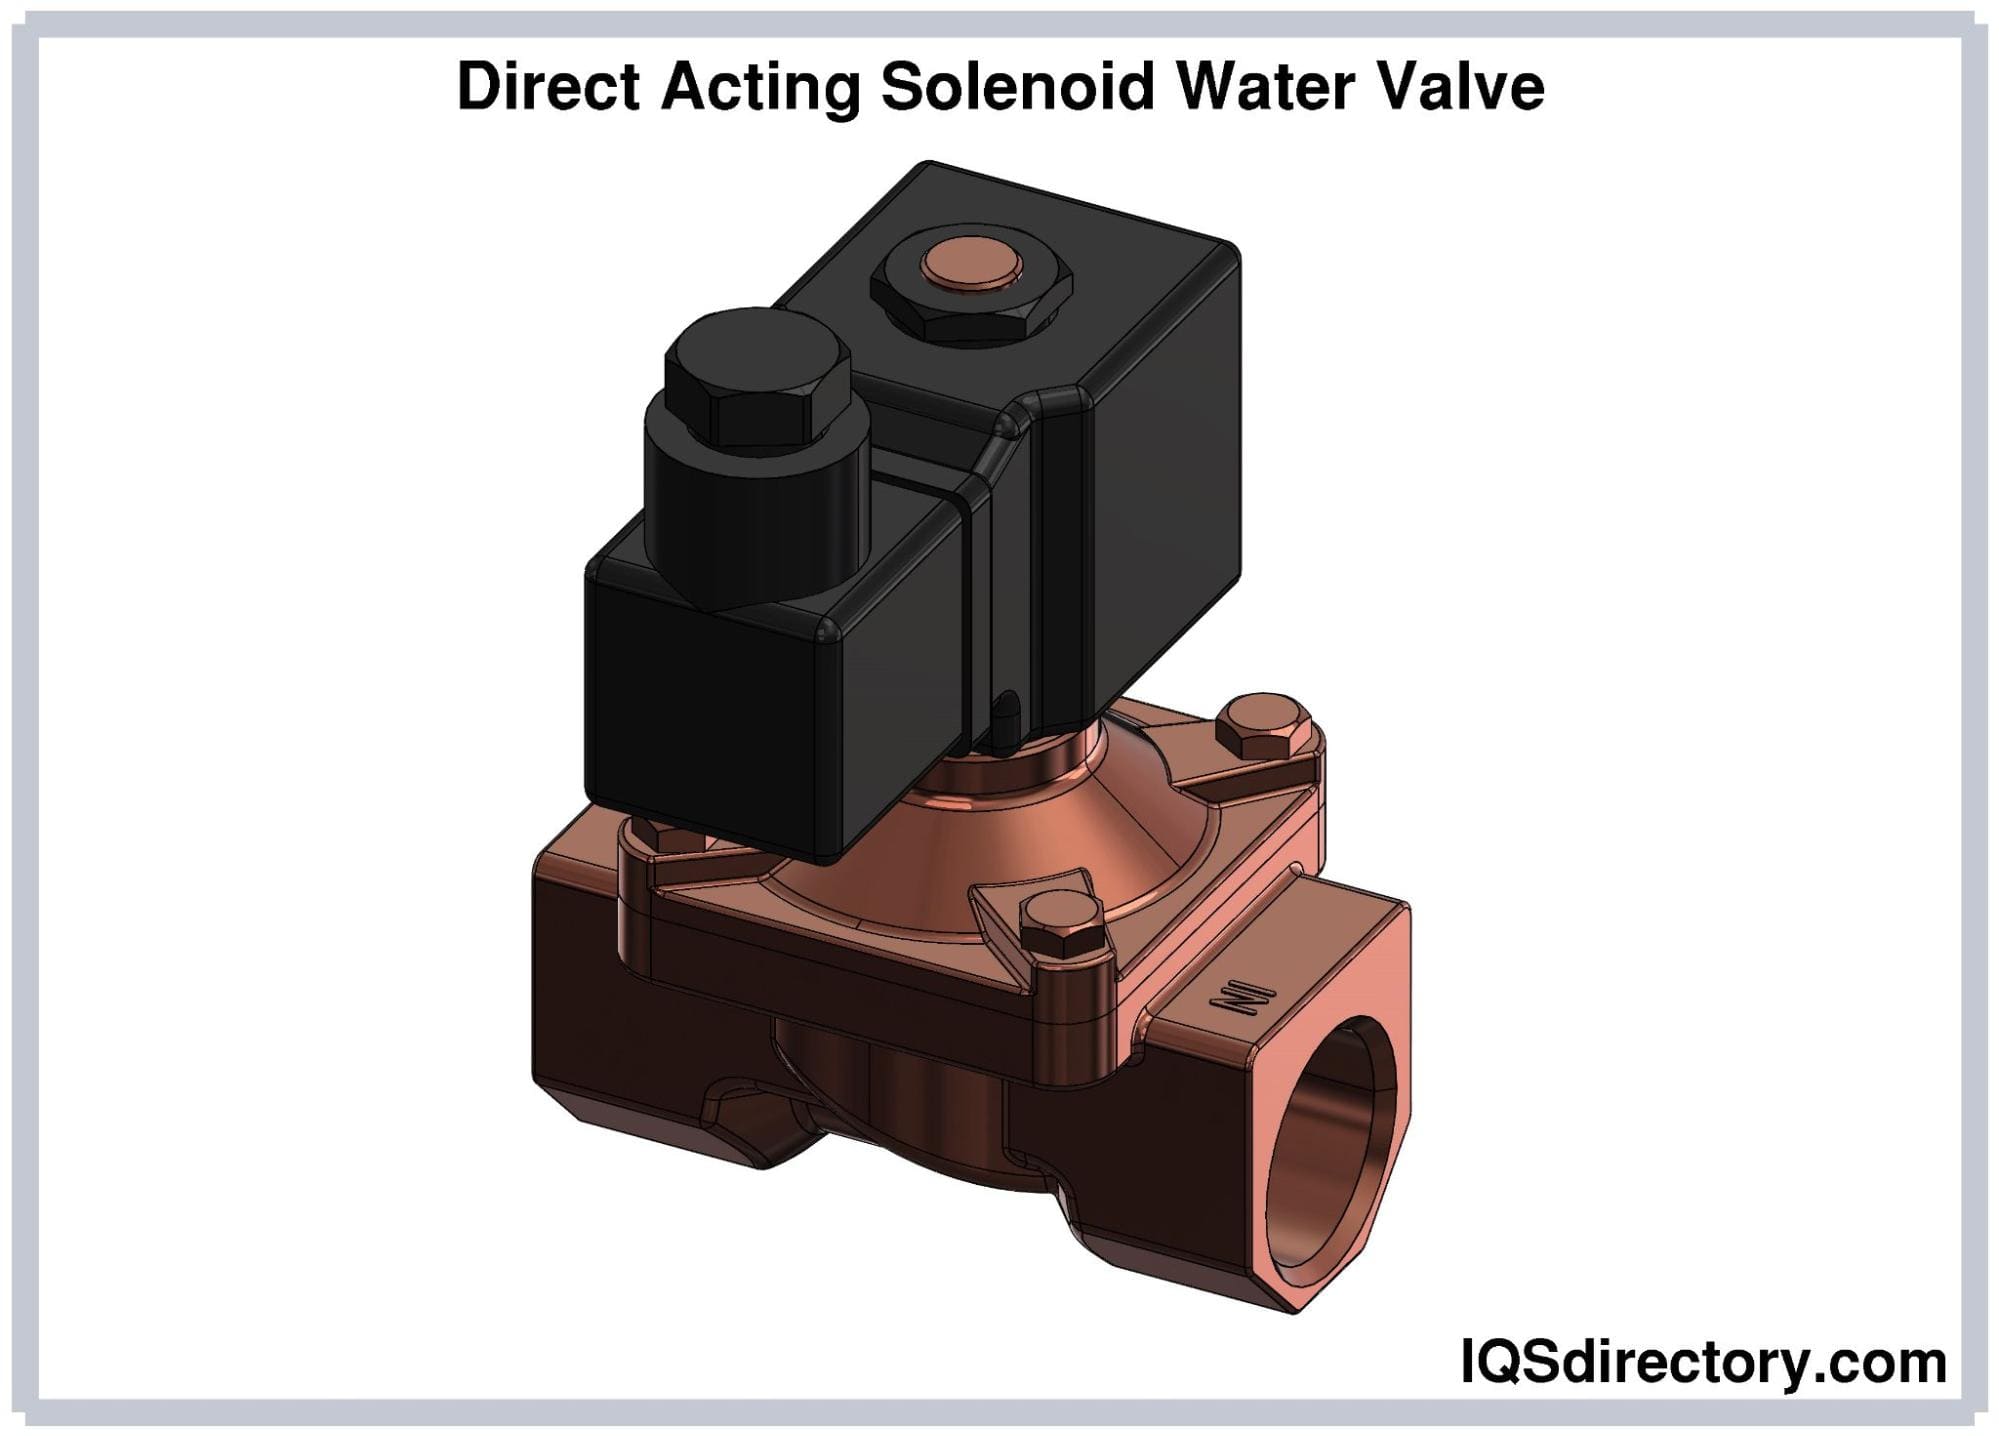 Direct Acting Solenoid Water Valve